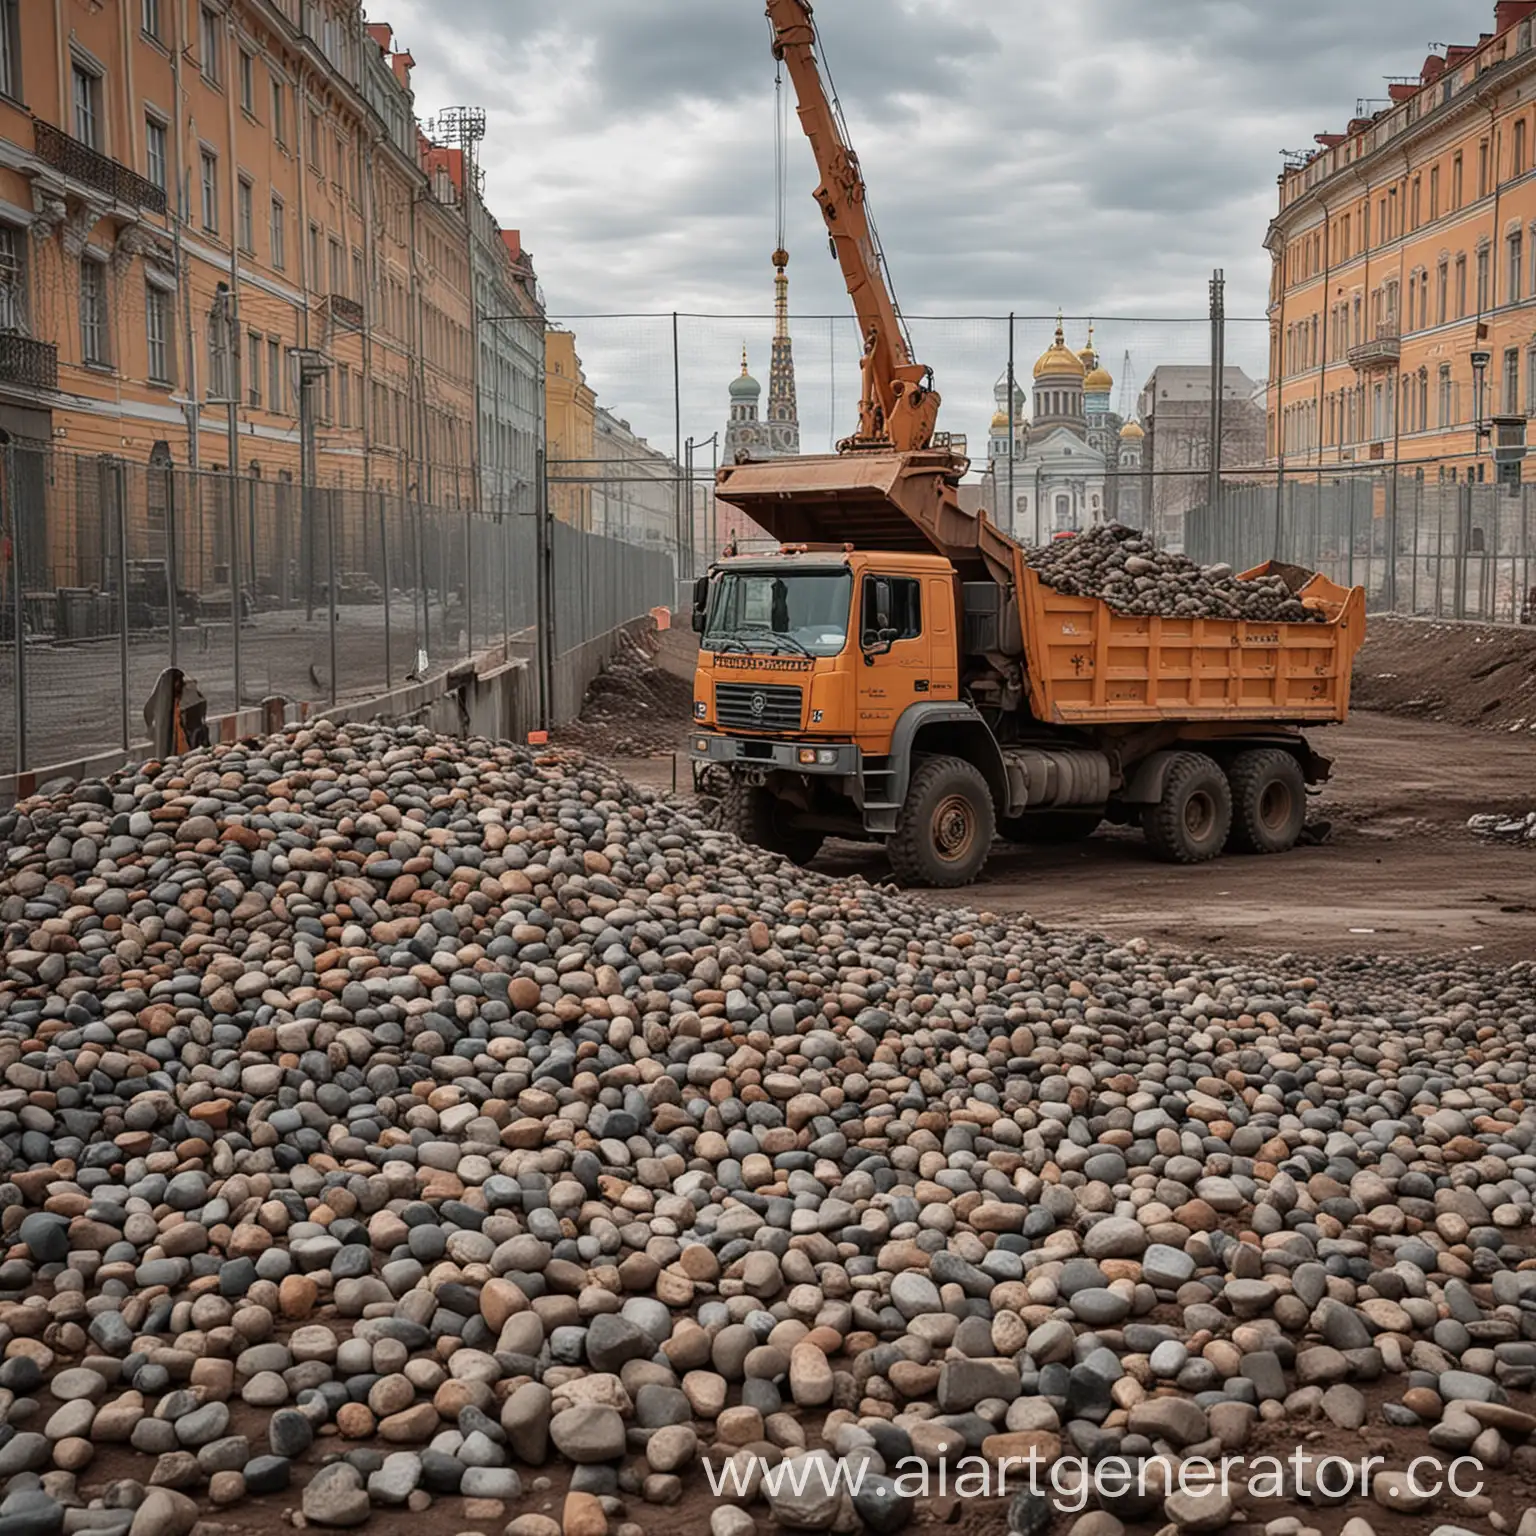 Строится известный памятник в городе Санкт-Петербурге вокруг стройки стоит забор а на стройку въезжает самосвал который везёт кучу маленьких камней